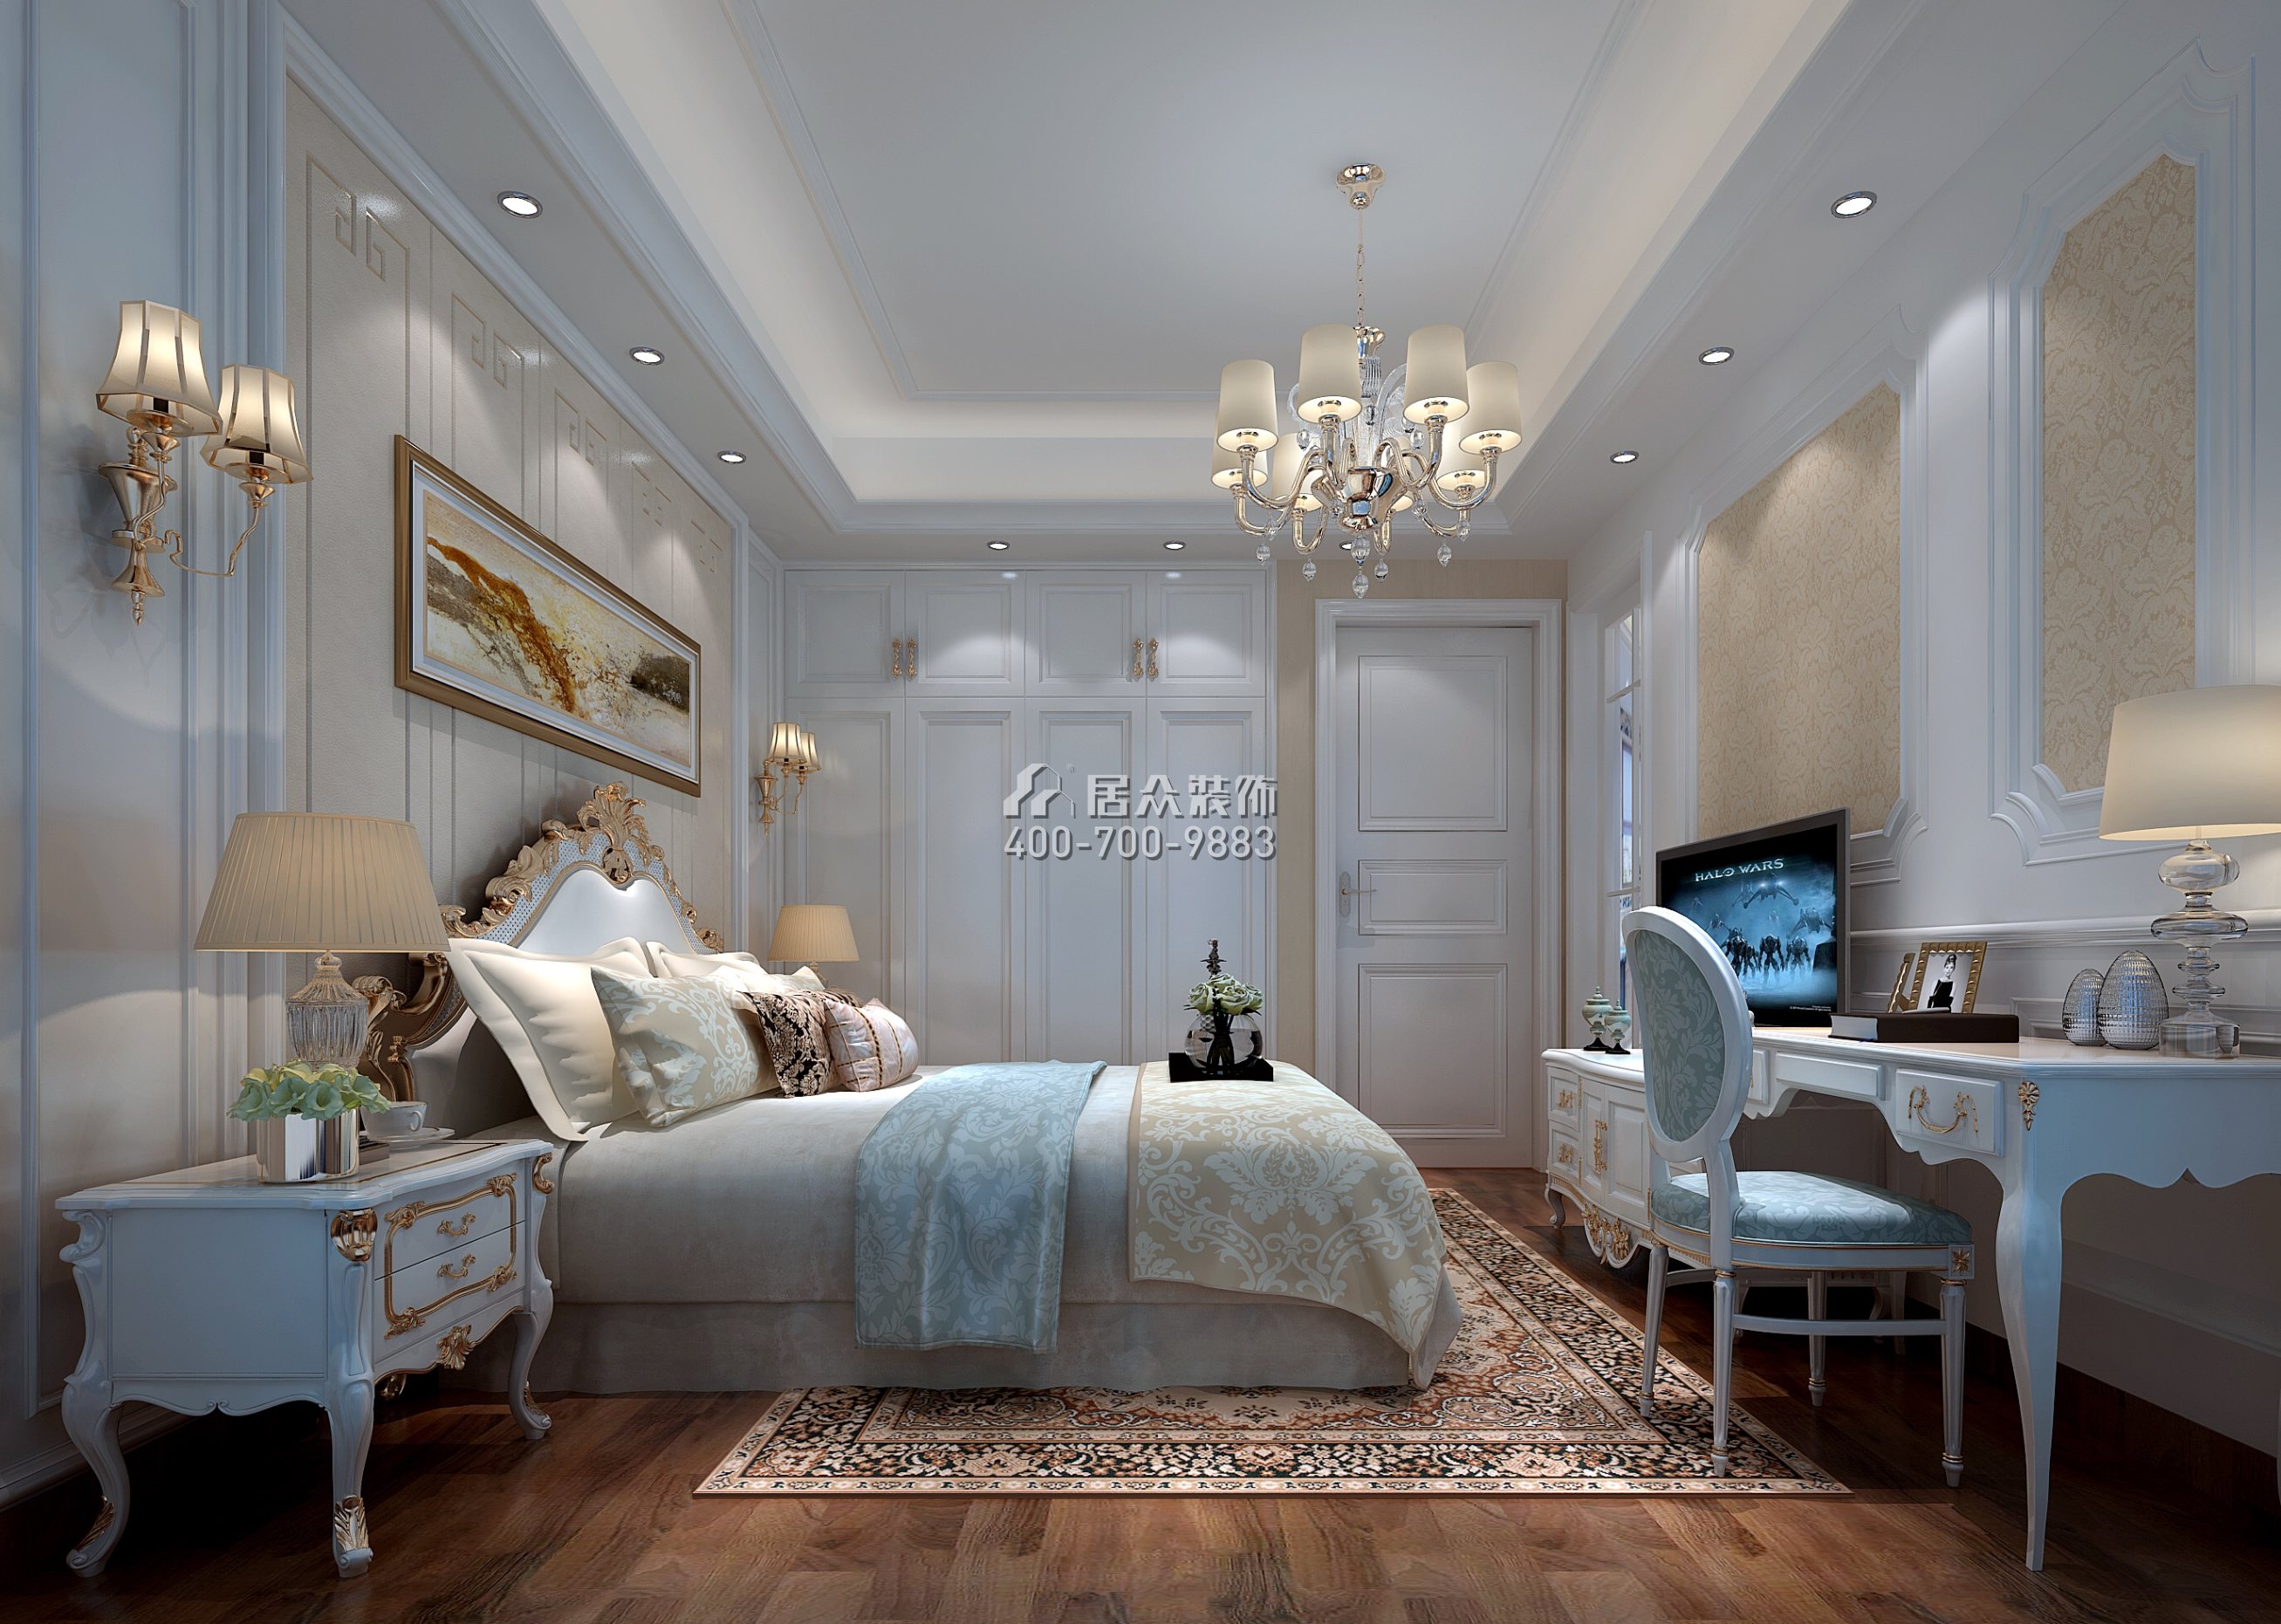 星河丹堤106平方米欧式风格平层户型卧室装修效果图